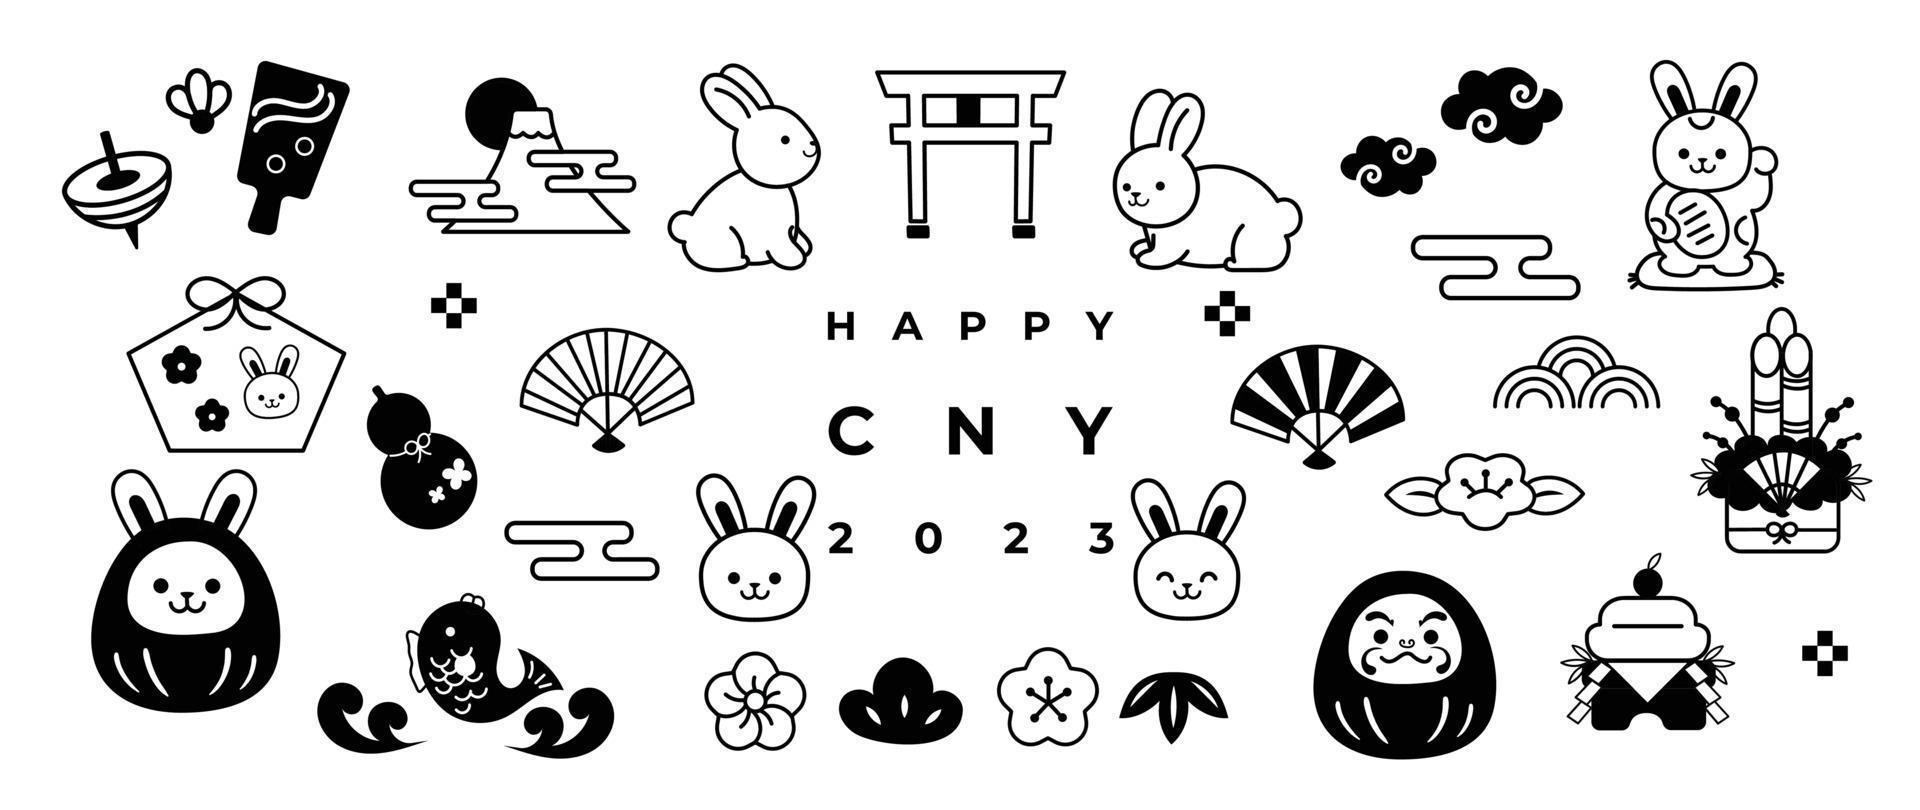 feliz ano novo 2023 elemento ano japonês do conjunto de vetores de coelho. coelho de doodle desenhado à mão, fuji, daruma, ventilador, garrafa de saquê cabaça, flores, bambu, nuvens, peixe. design para adesivo, carimbo, cartão.